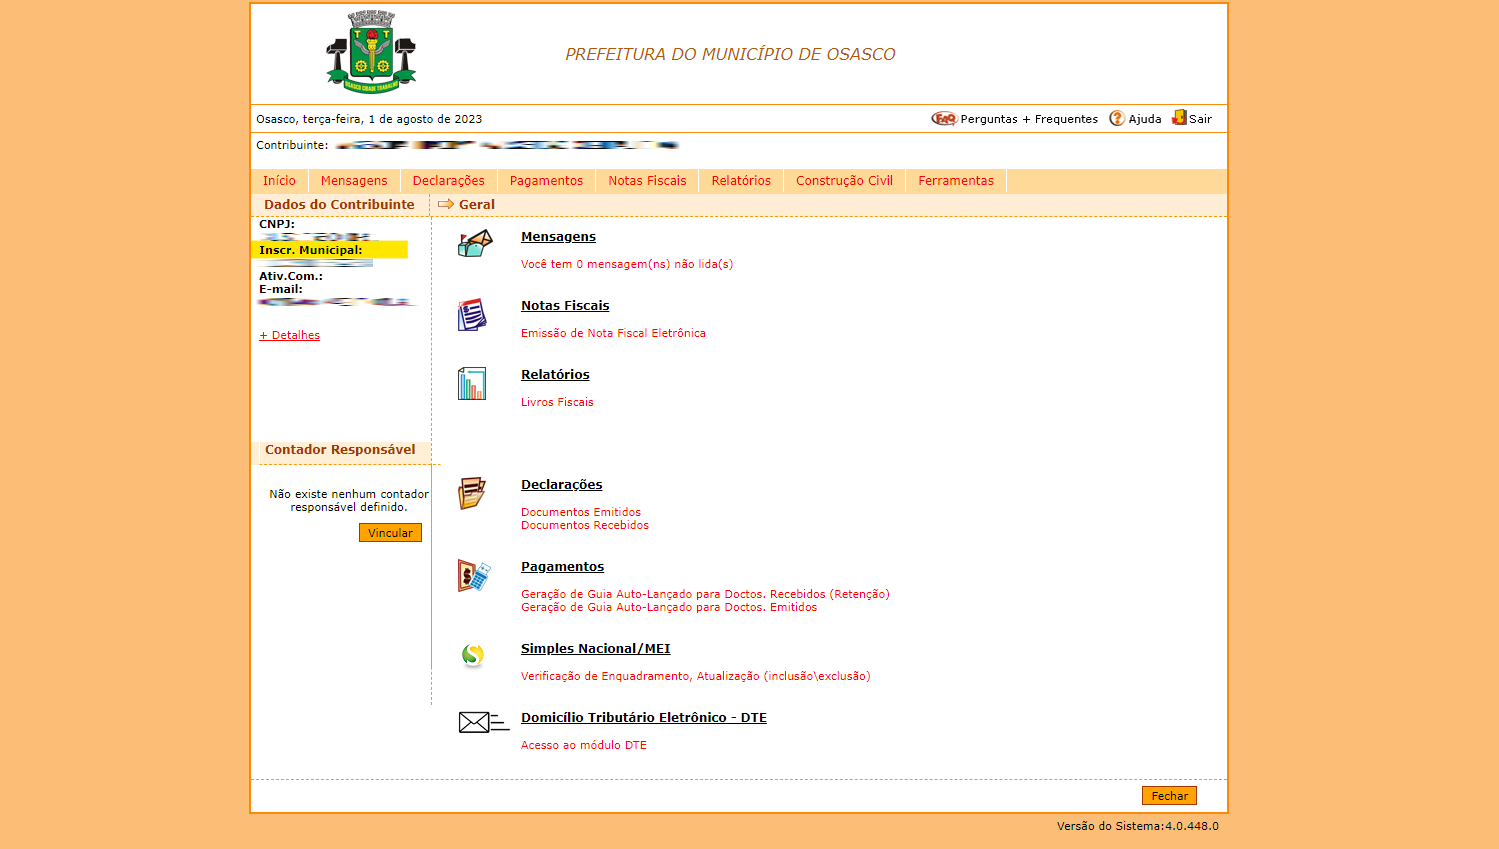 Inscrição municipal e-governe.png